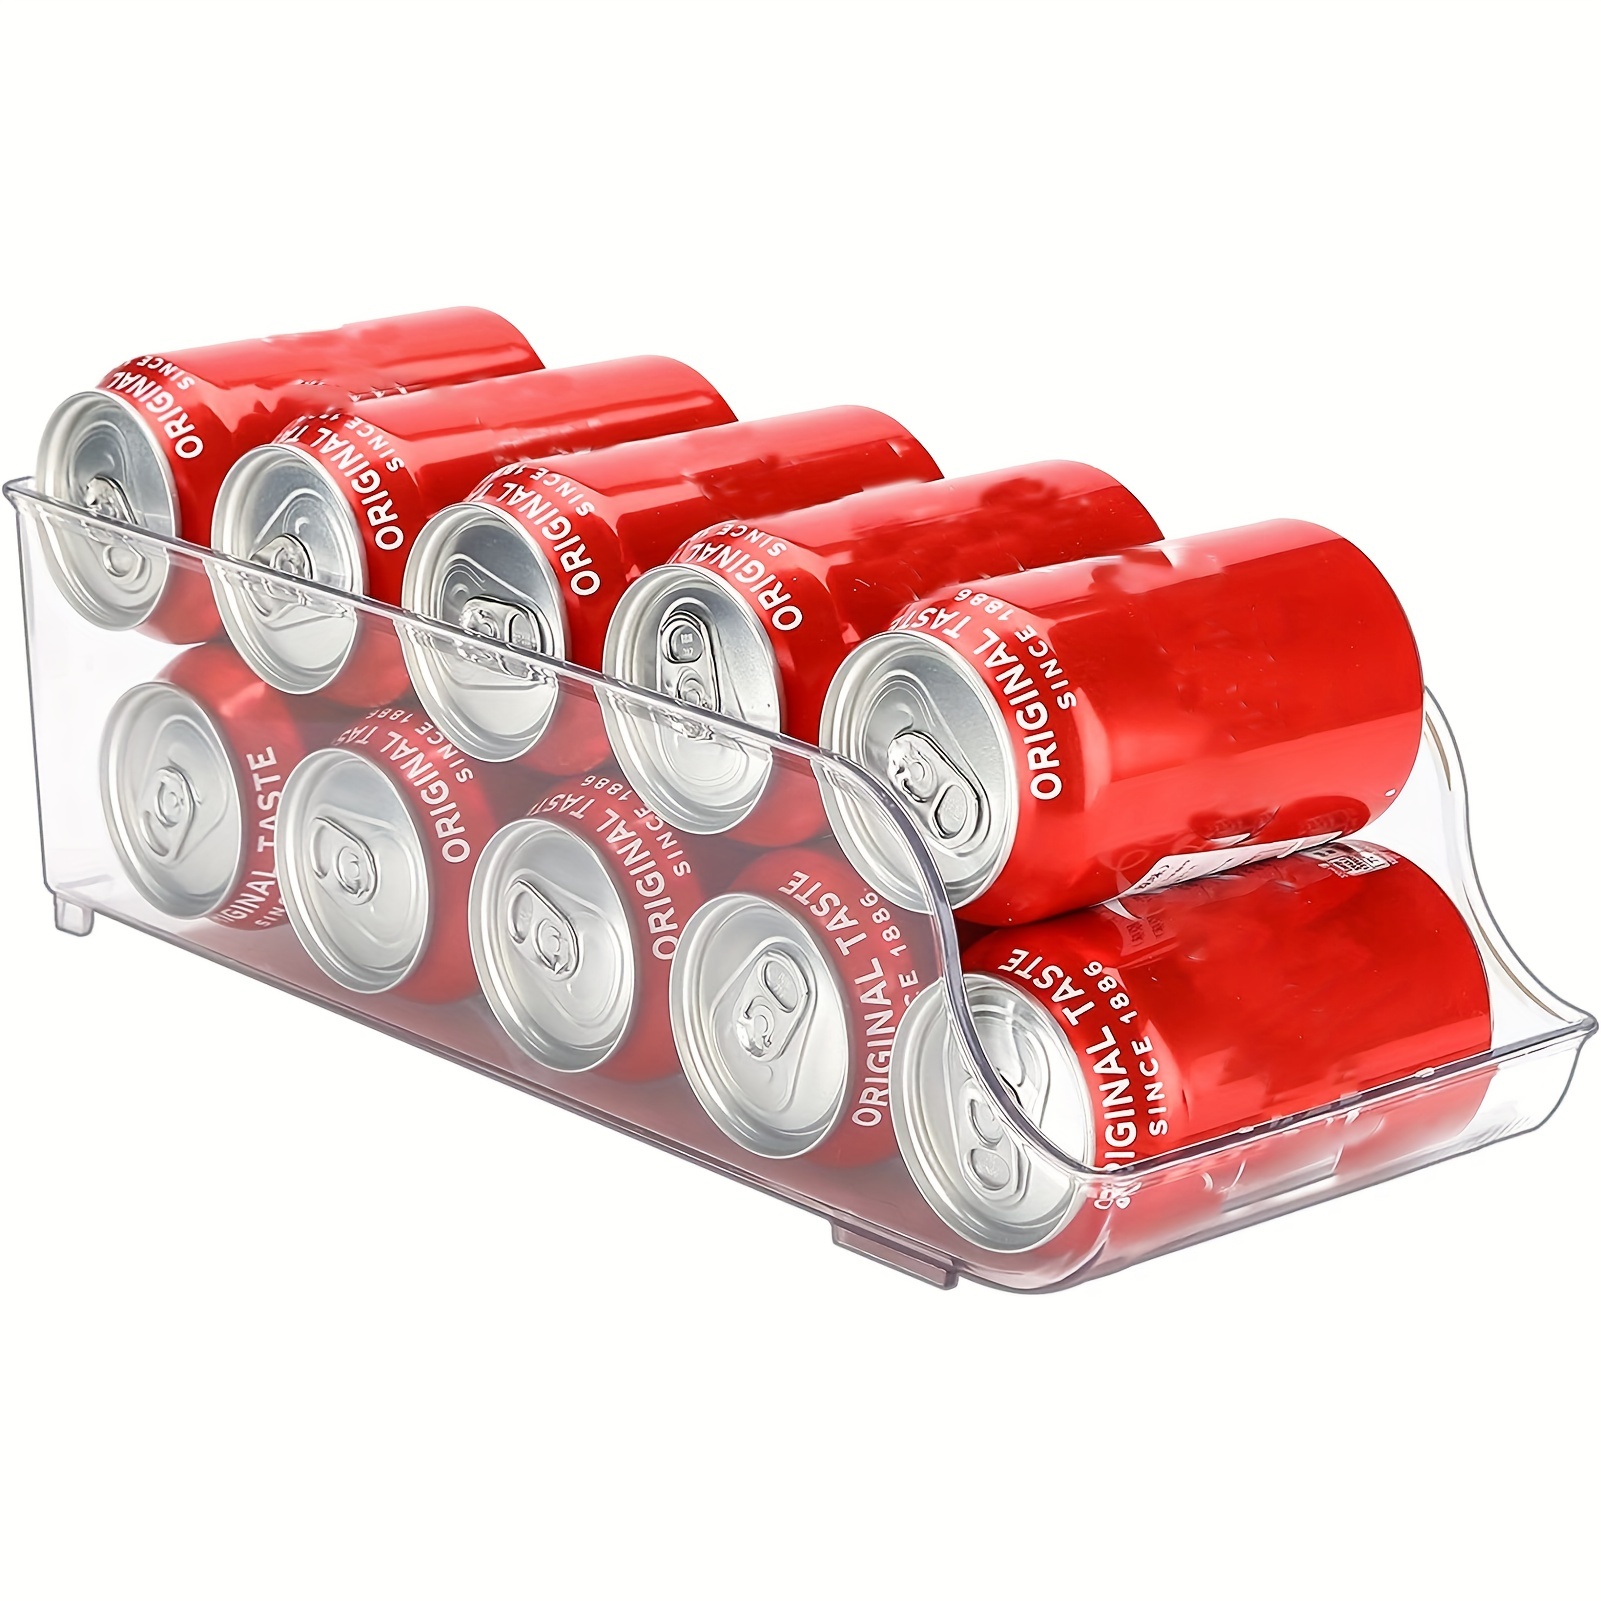 DISTRIBUX organizador nevera latas Apilable y Ahorra Espacio Dispensador de  Latas de Refresco para Despensa Nevera Congelador y Lavadero